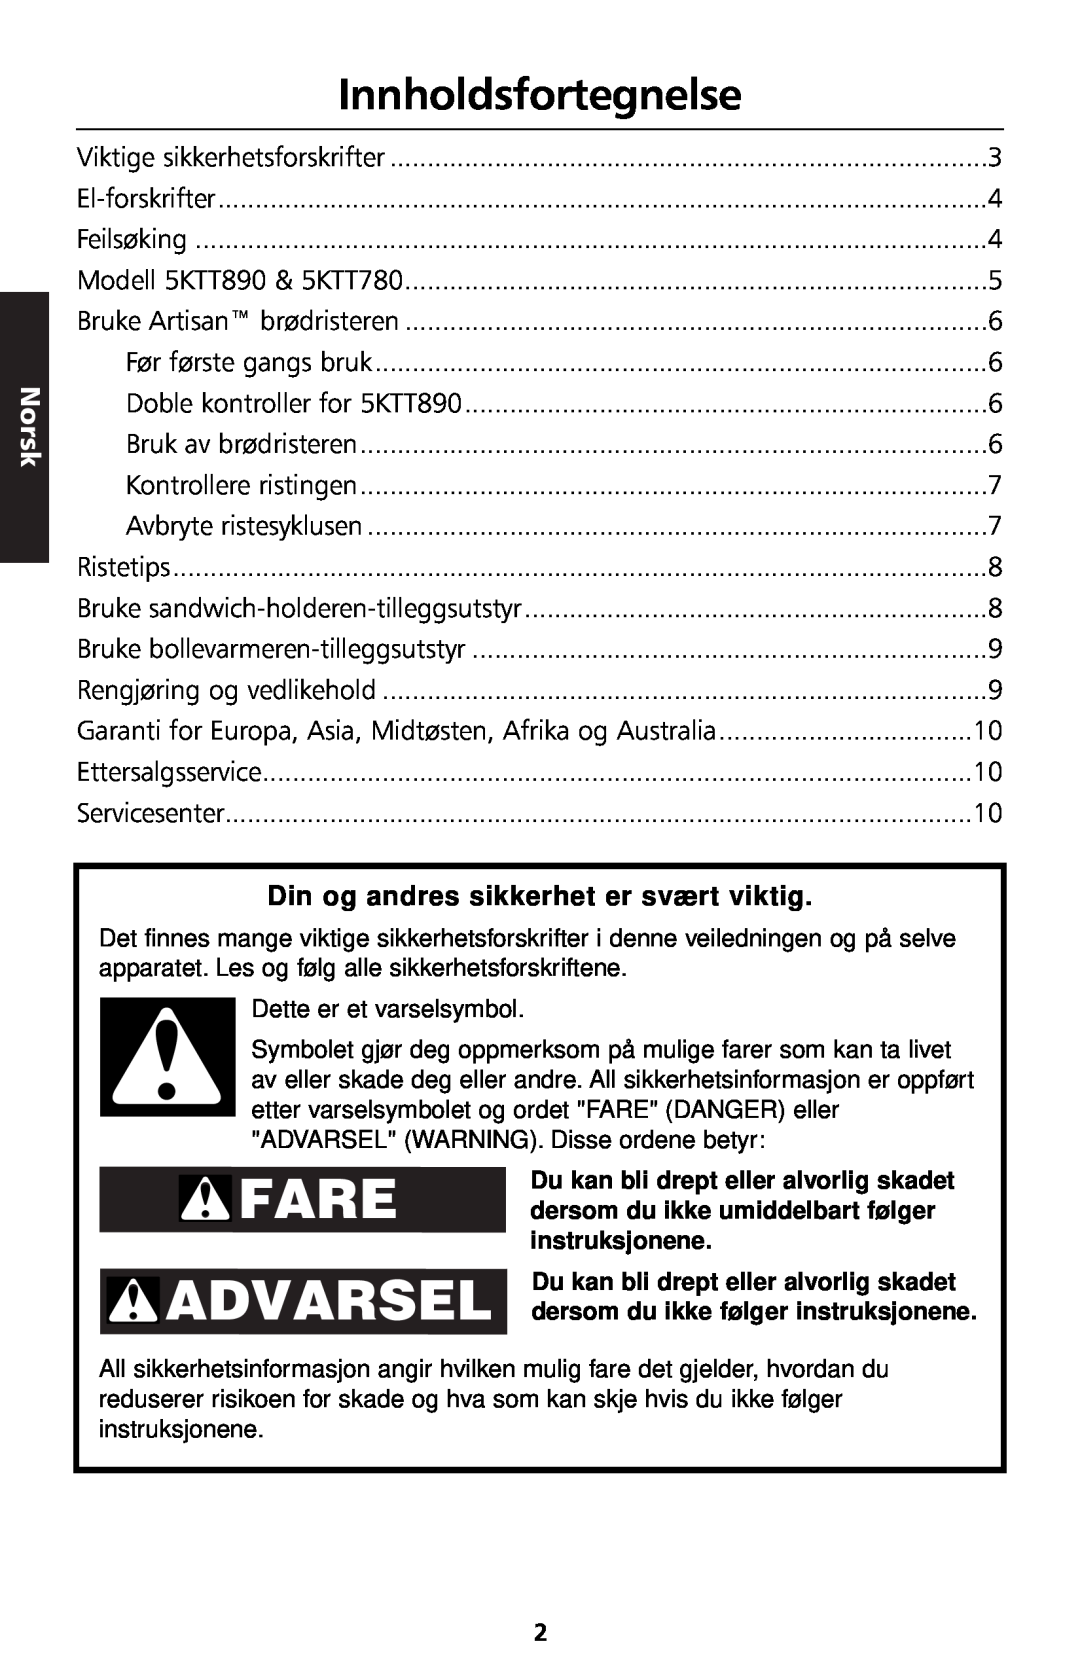 KitchenAid 5KTT890 manual Innholdsfortegnelse, Norsk, Din og andres sikkerhet er svært viktig 